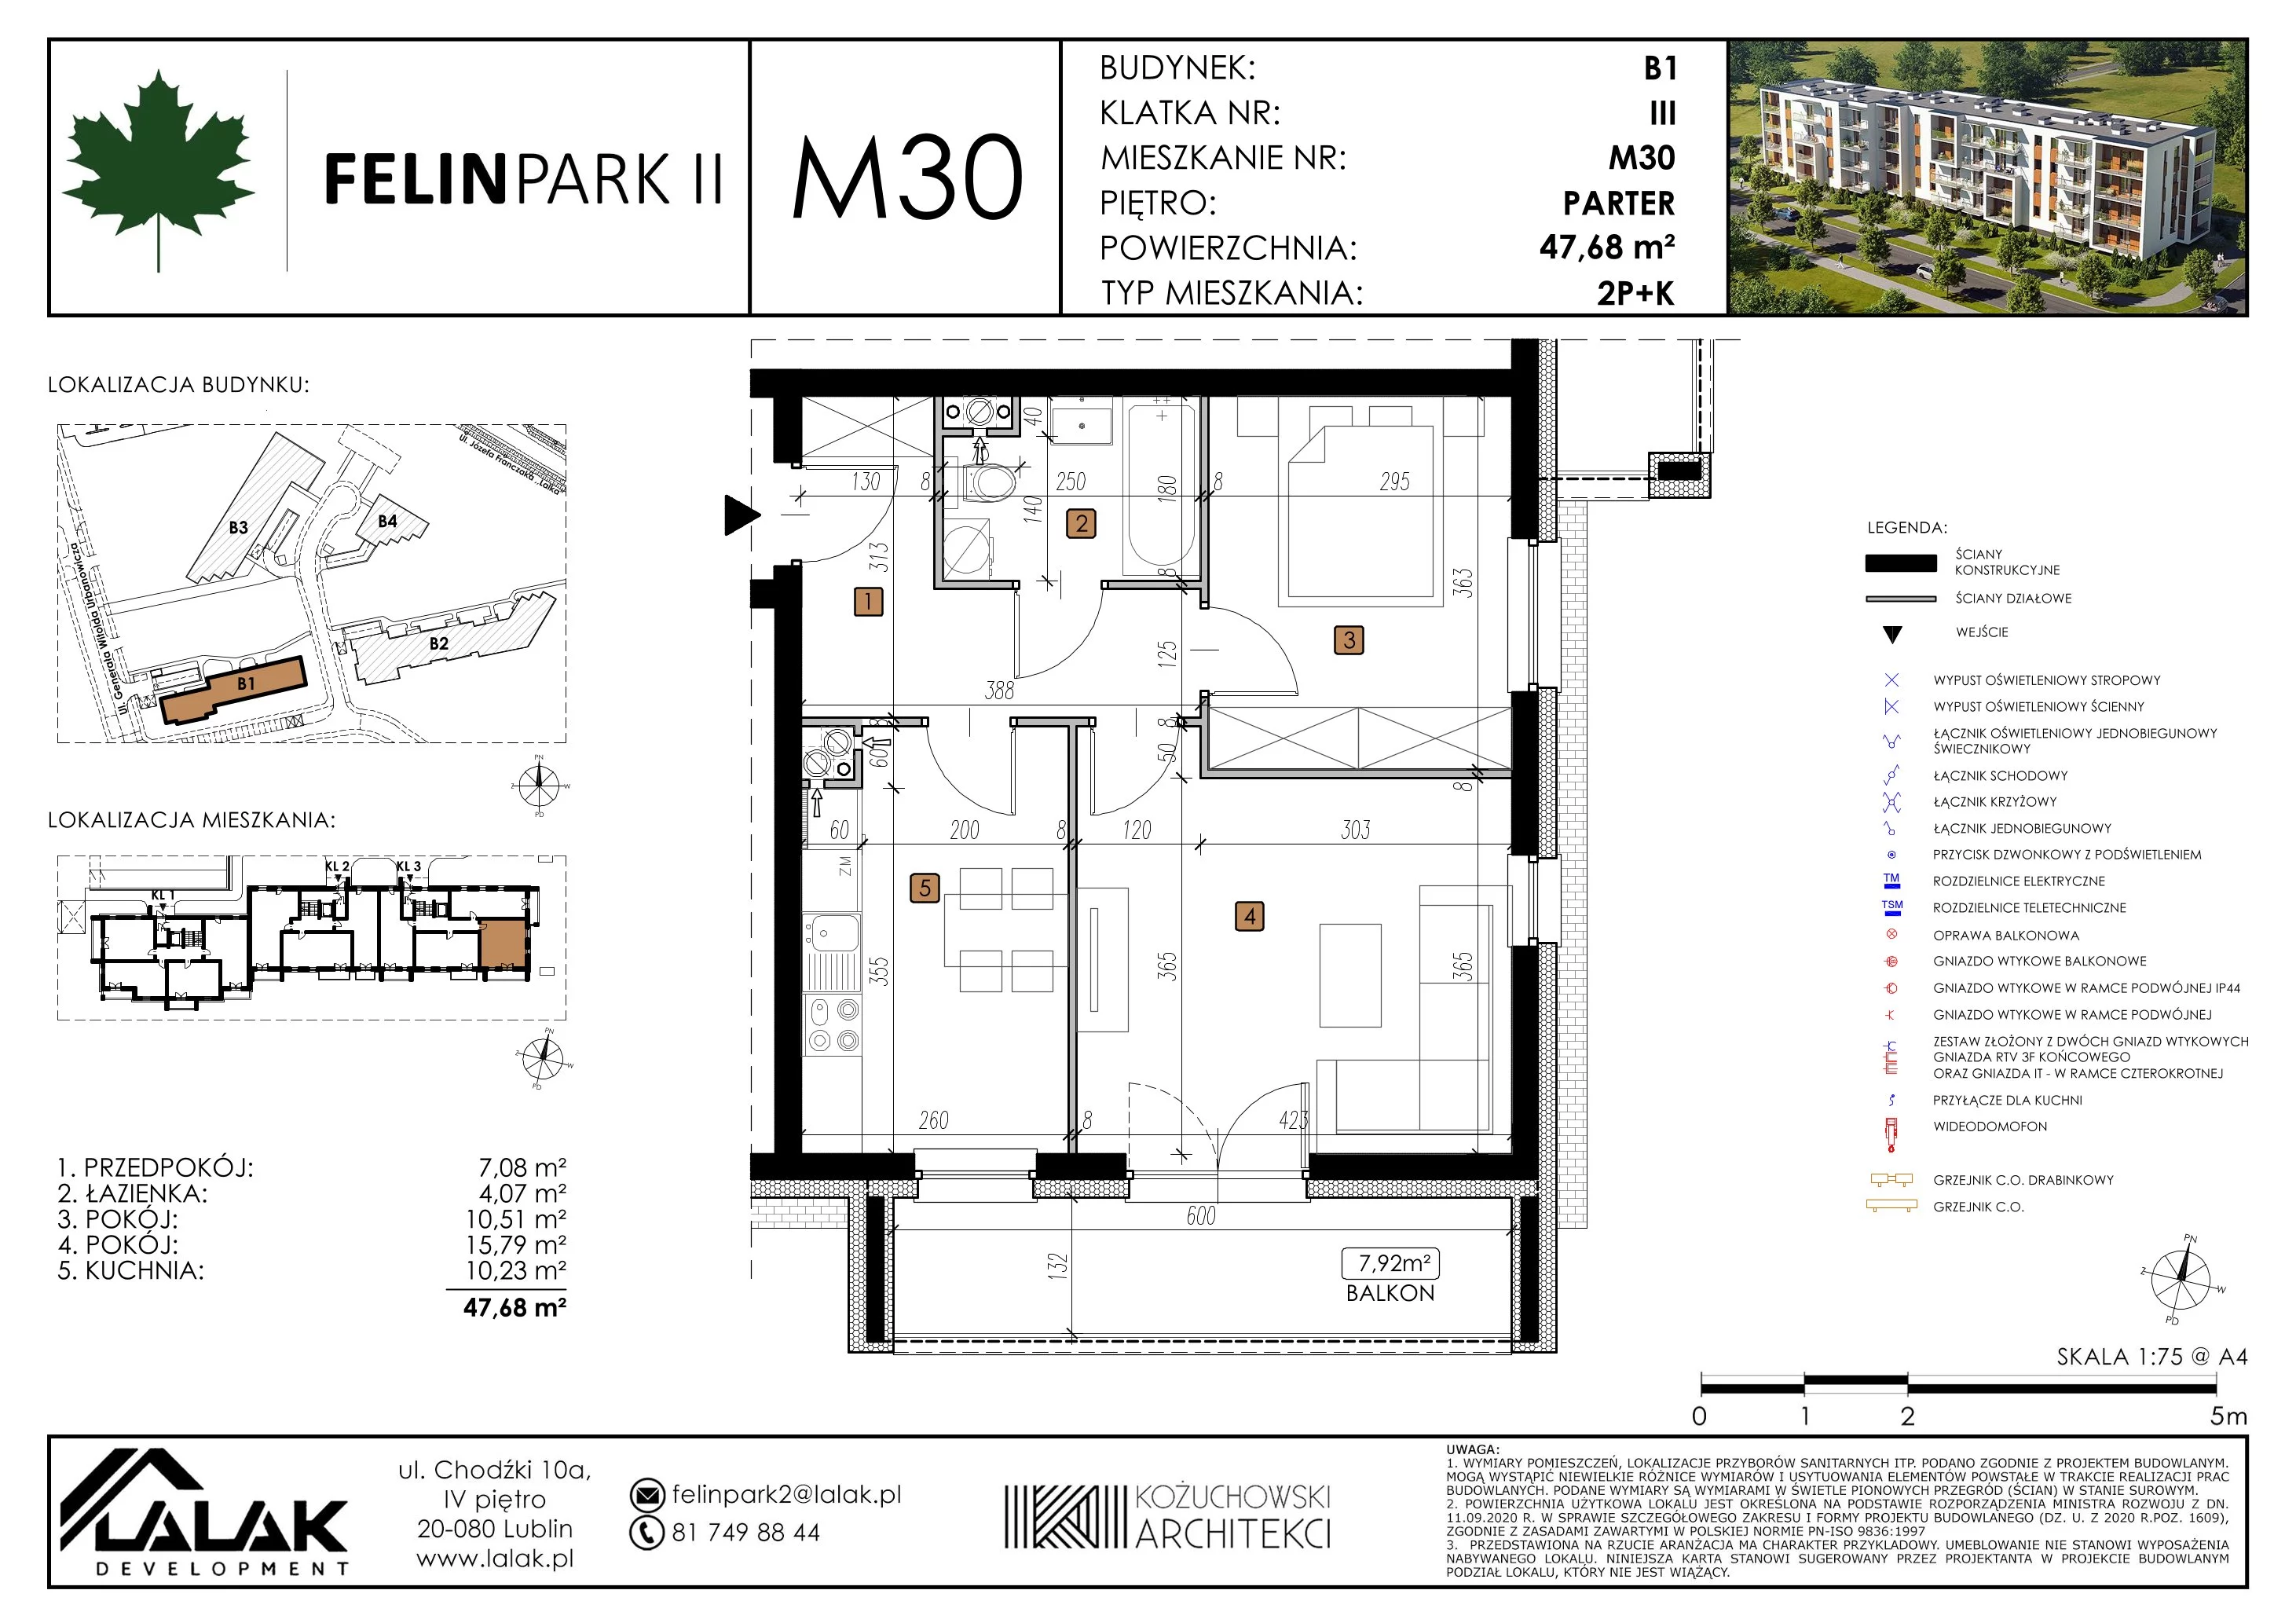 Mieszkanie 47,68 m², parter, oferta nr B1_M30/P, Felin Park II, Lublin, Felin, ul. gen. Stanisława Skalskiego 8-10